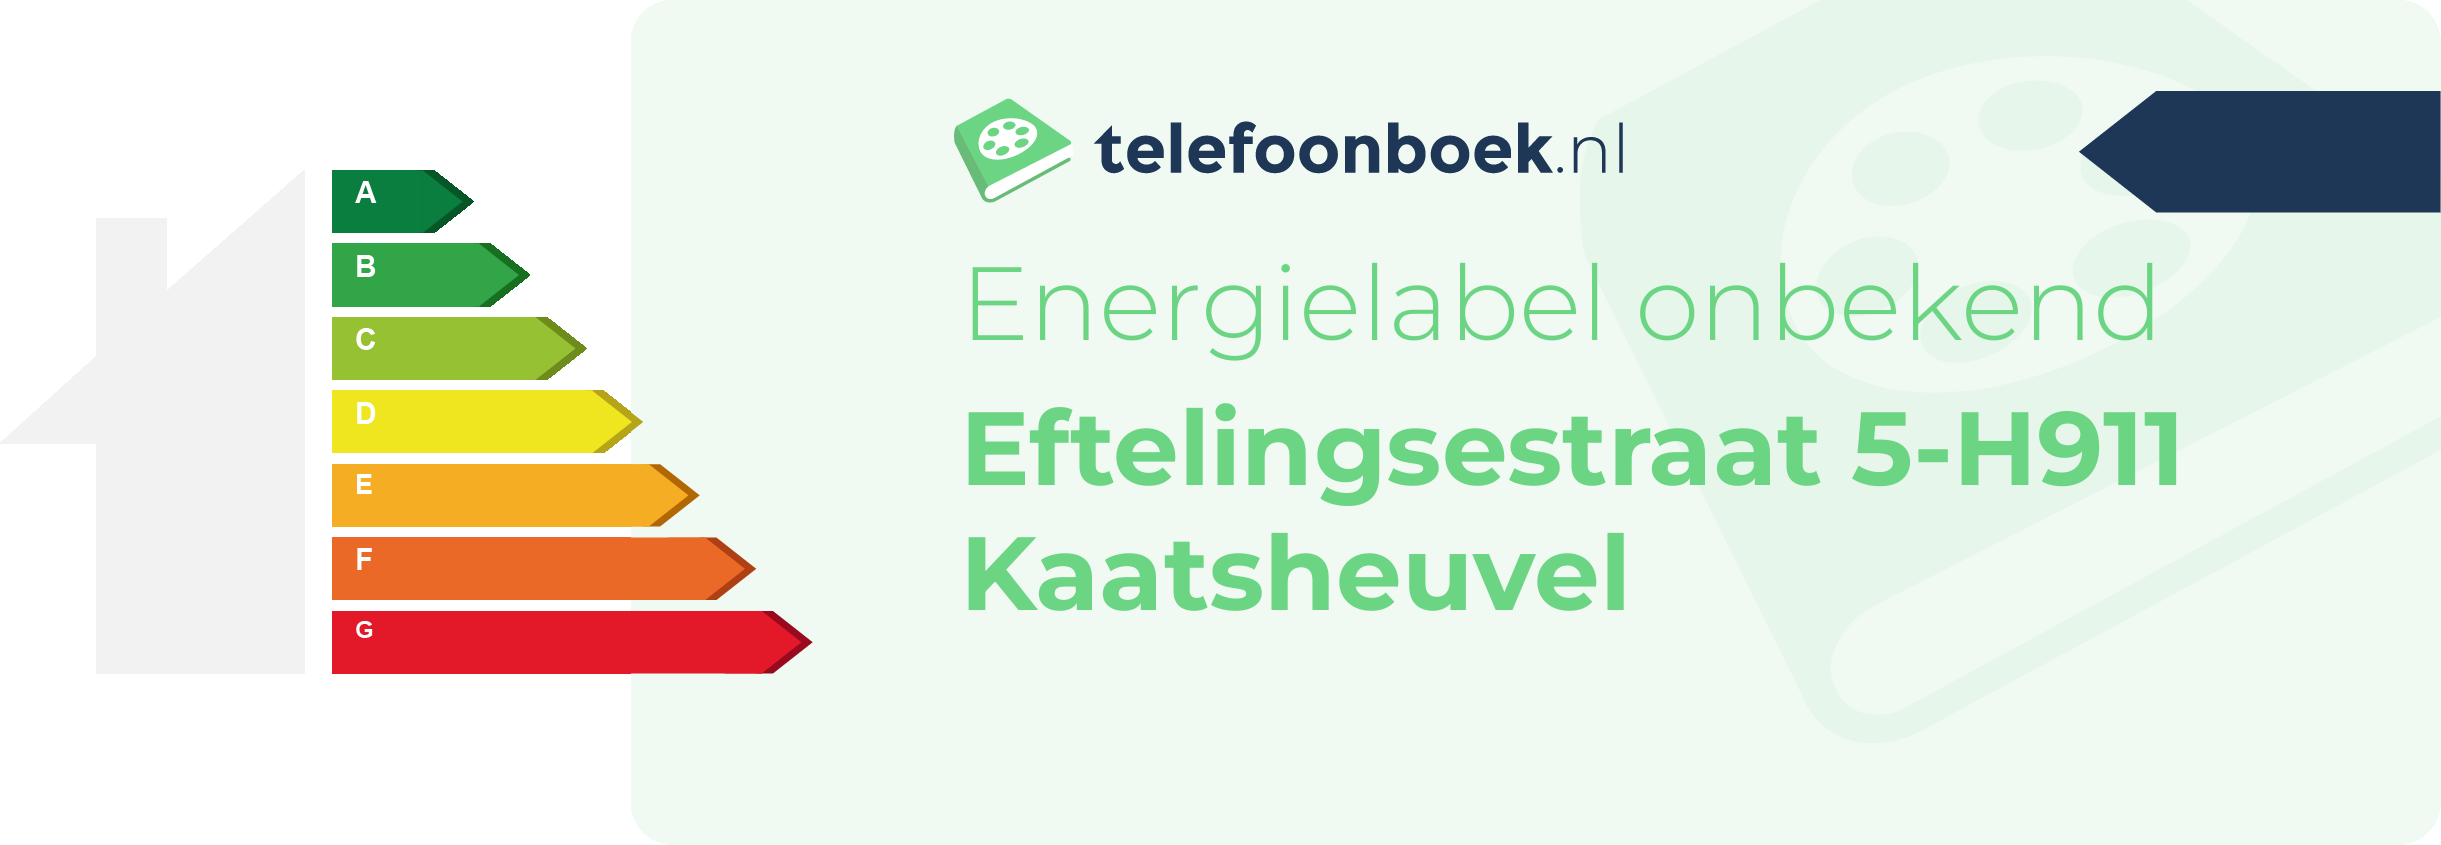 Energielabel Eftelingsestraat 5-H911 Kaatsheuvel